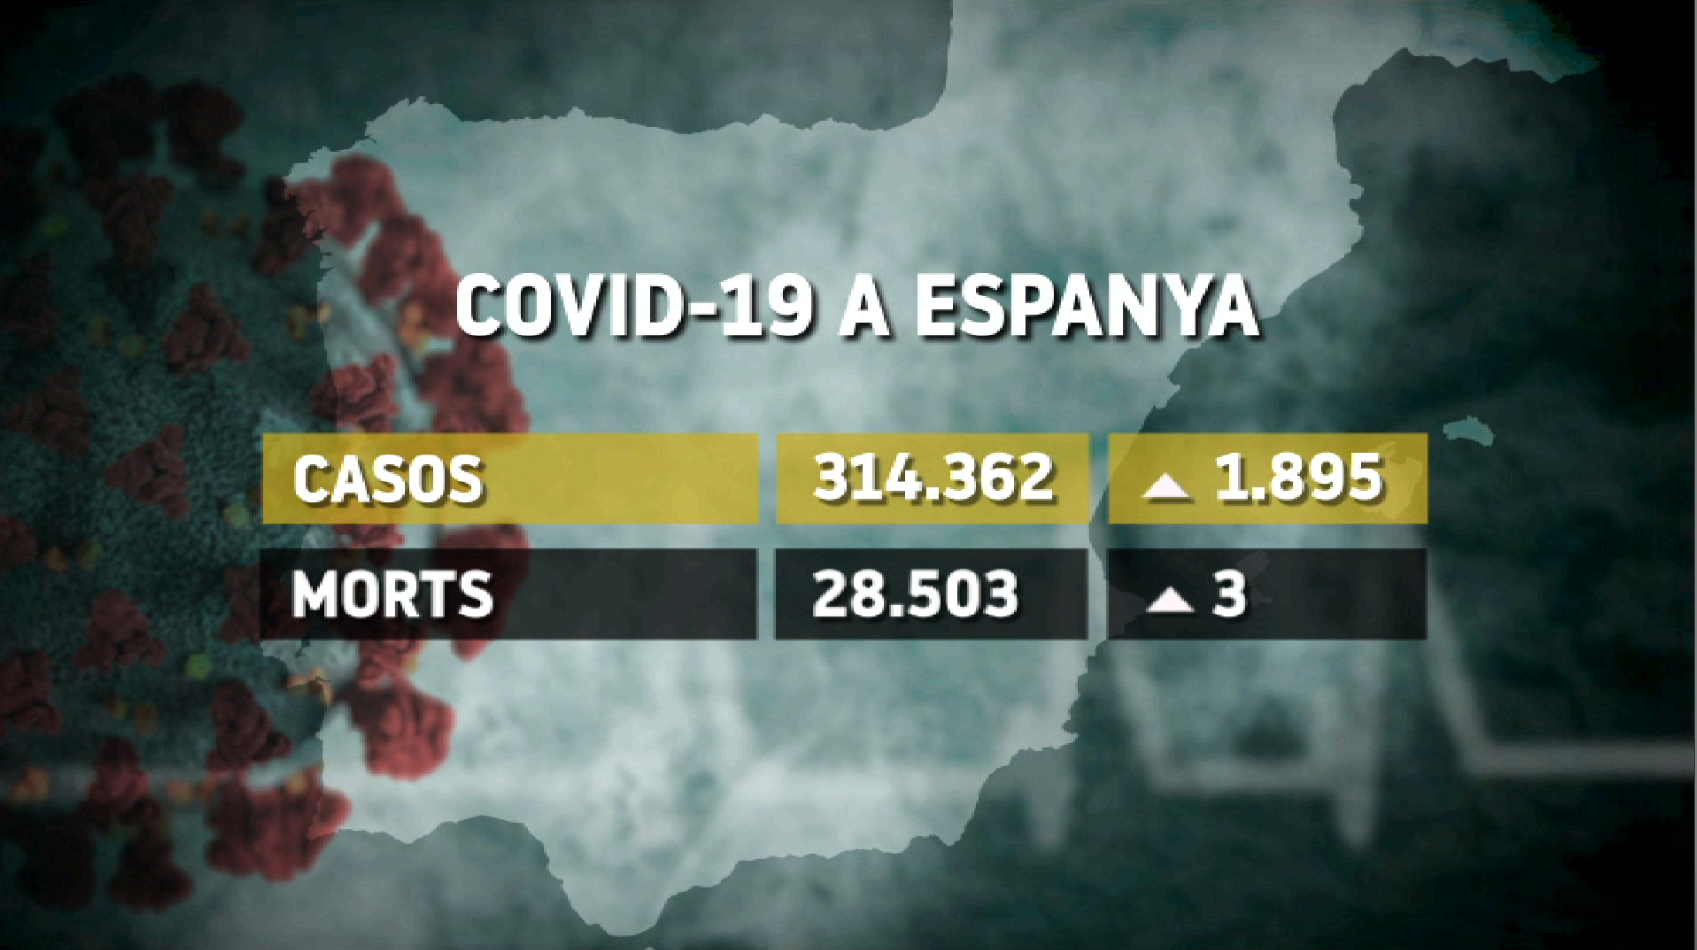 Sanitat+notifica+1.895+nous+casos+de+COVID-19+a+Espanya%2C+200+m%C3%A9s+en+24+hores